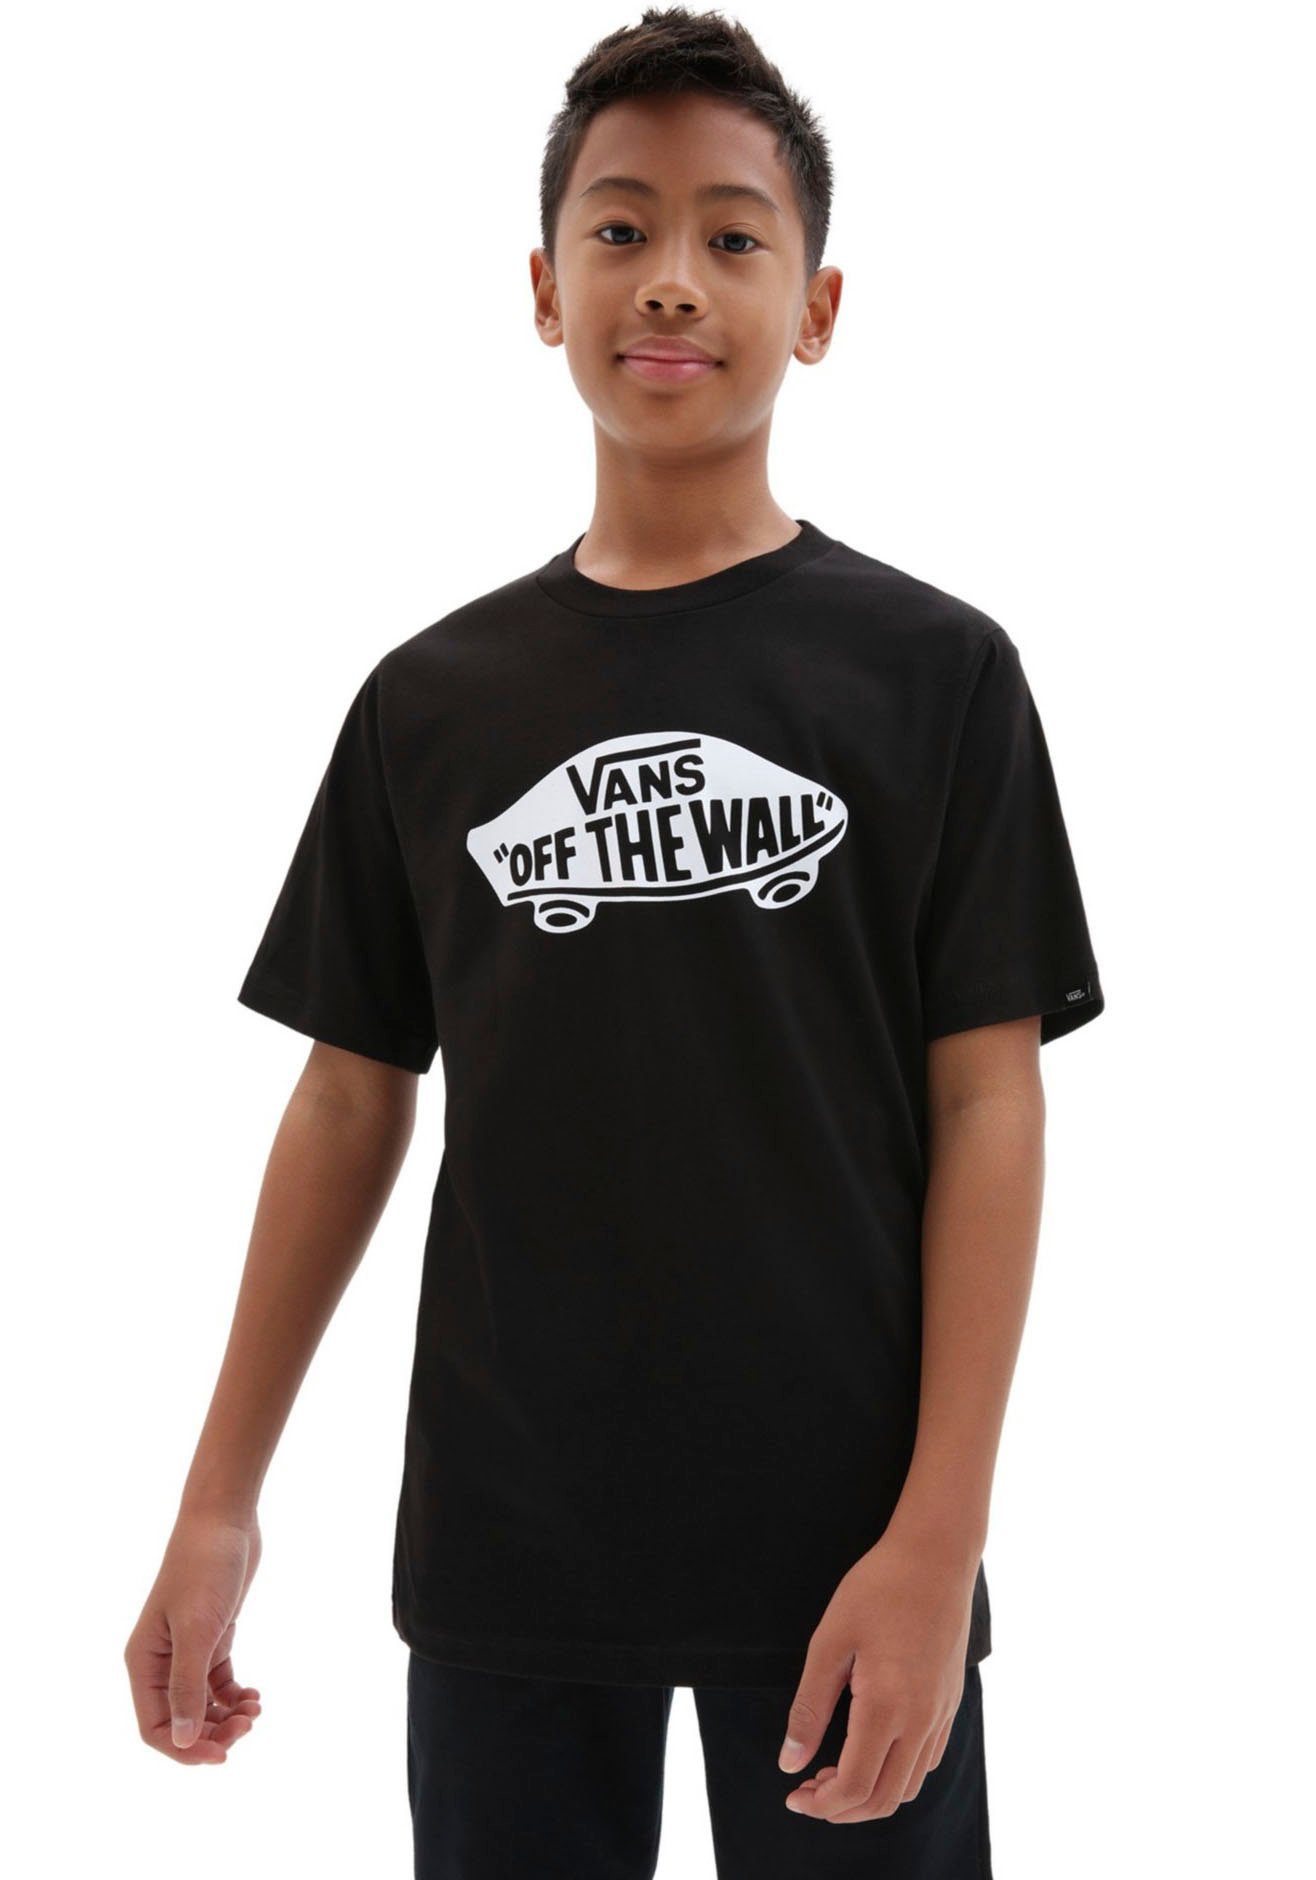 hat einen supergünstigen Ausverkauf! Vans Jungen T-Shirts online | OTTO kaufen